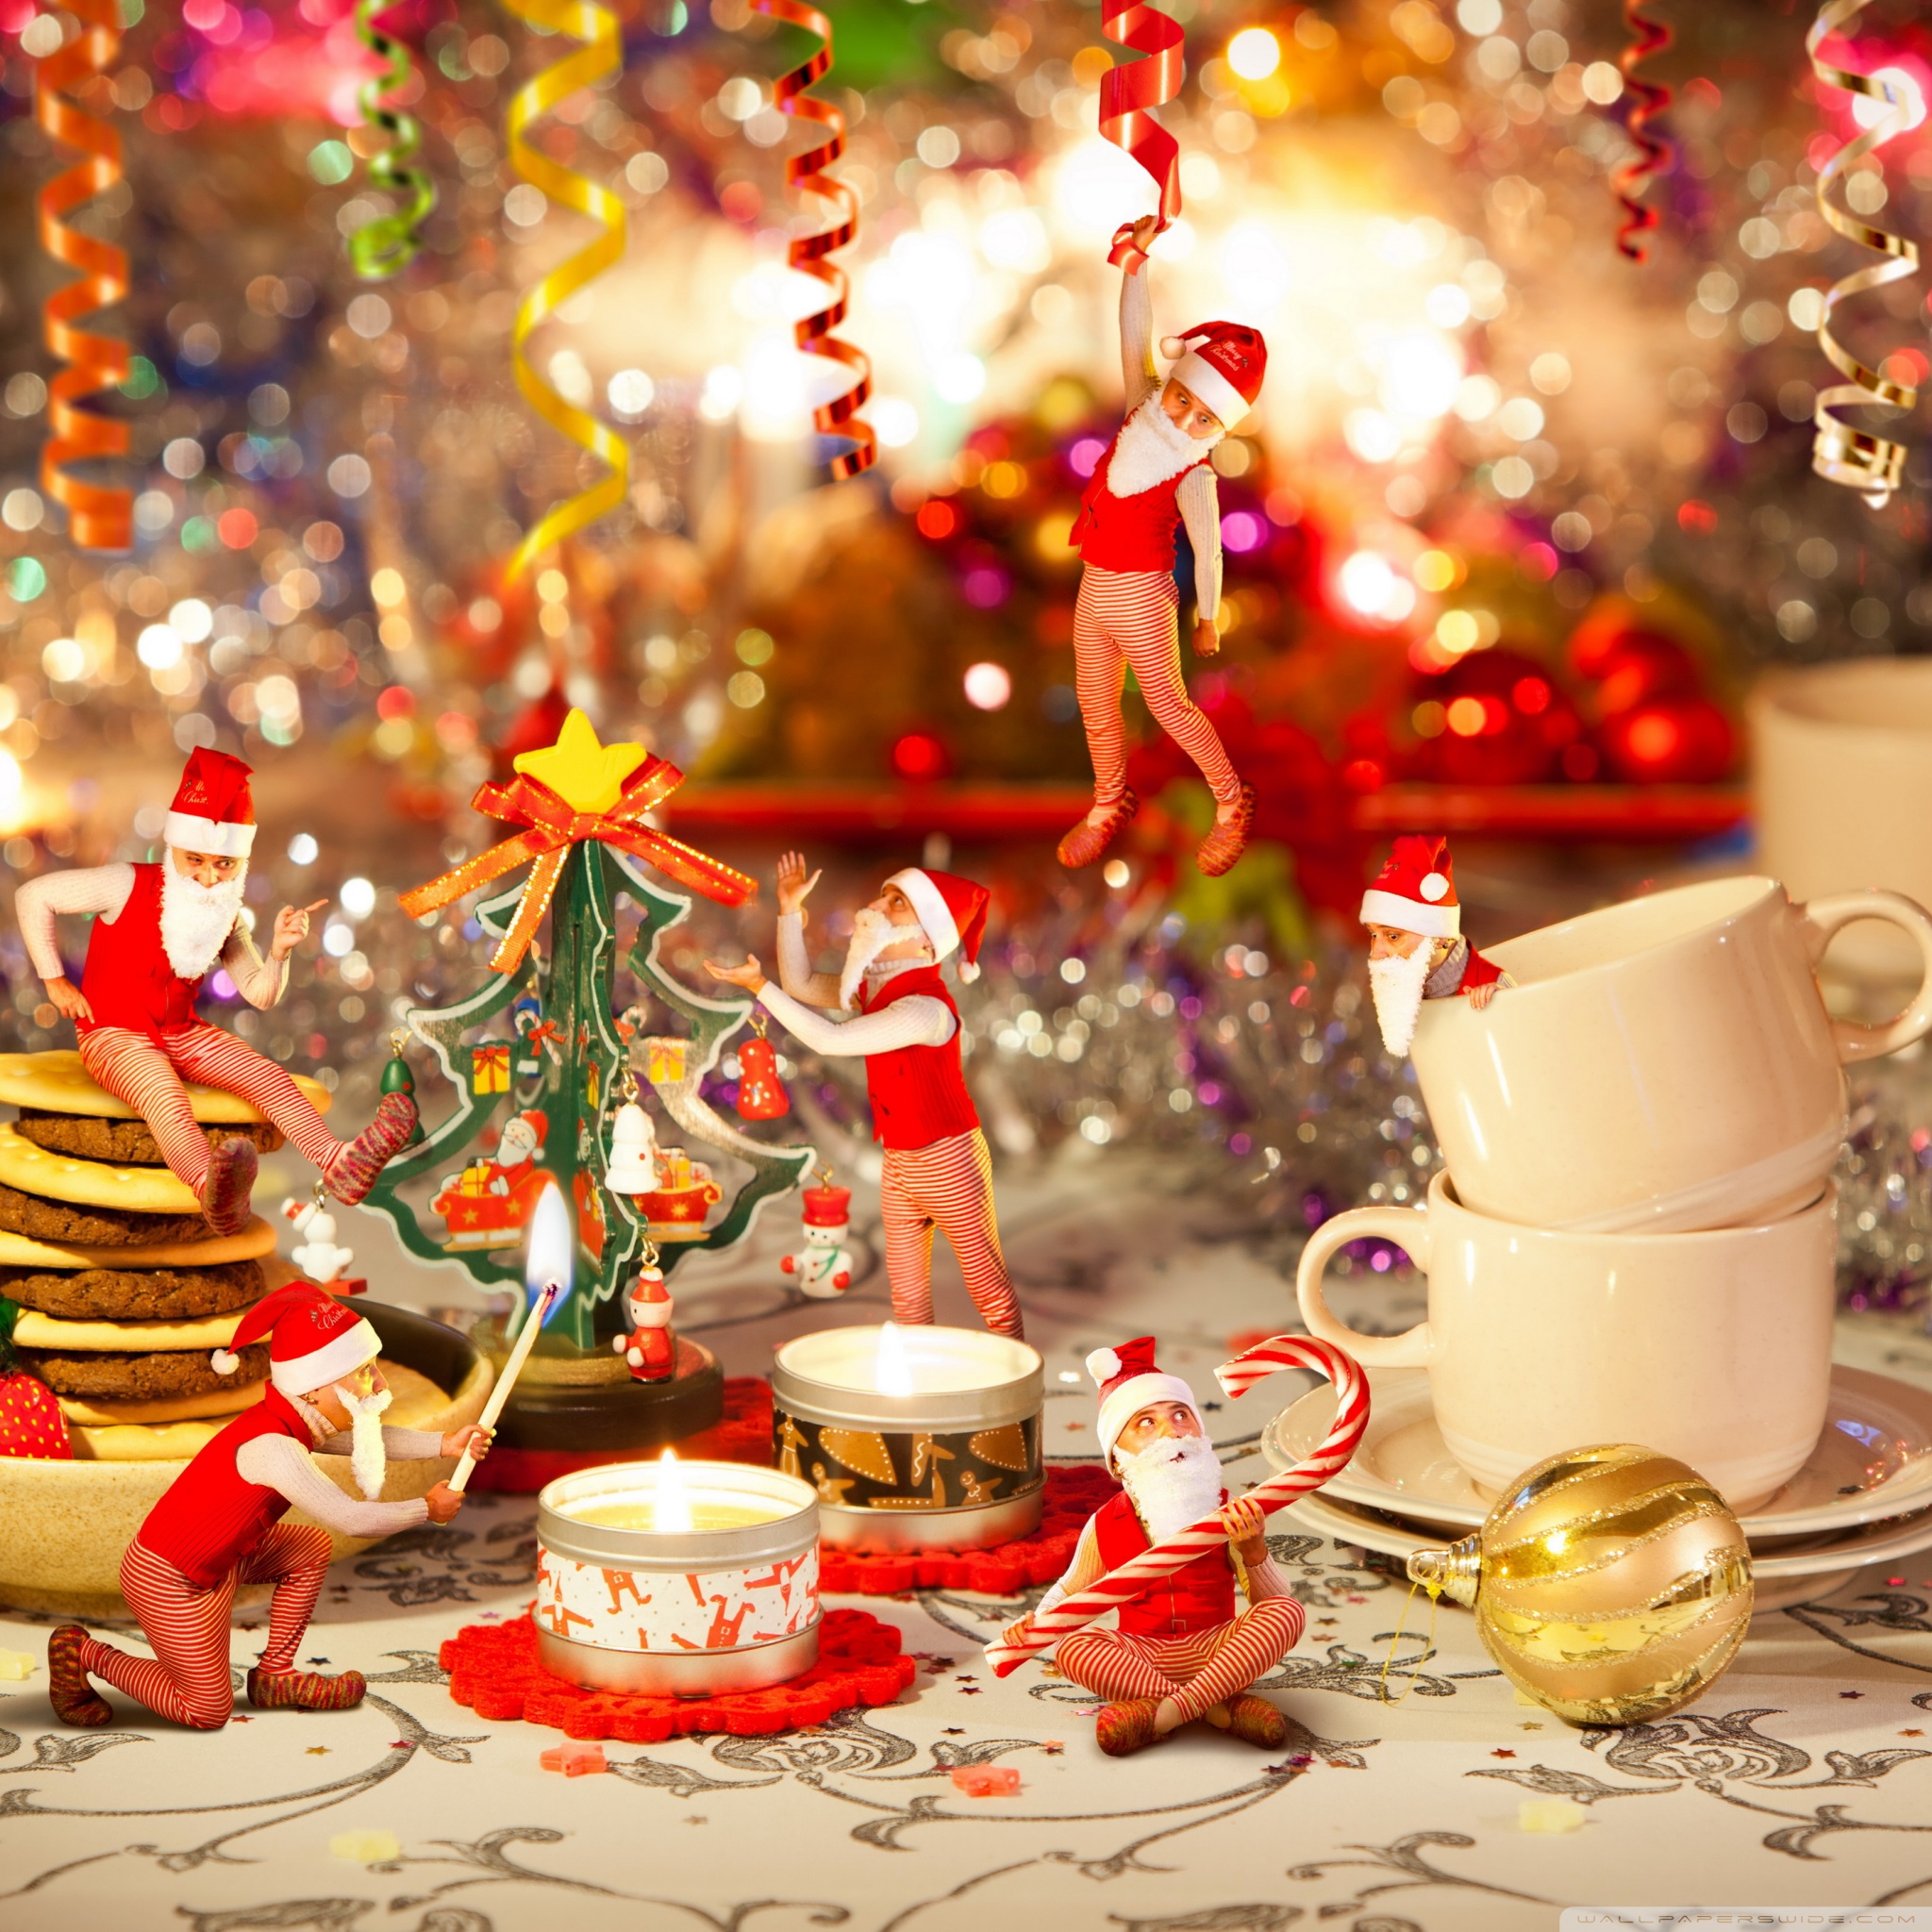 navidad fondos de pantalla hd,nochebuena,decoración navideña,navidad,tradicion,decoración navideña